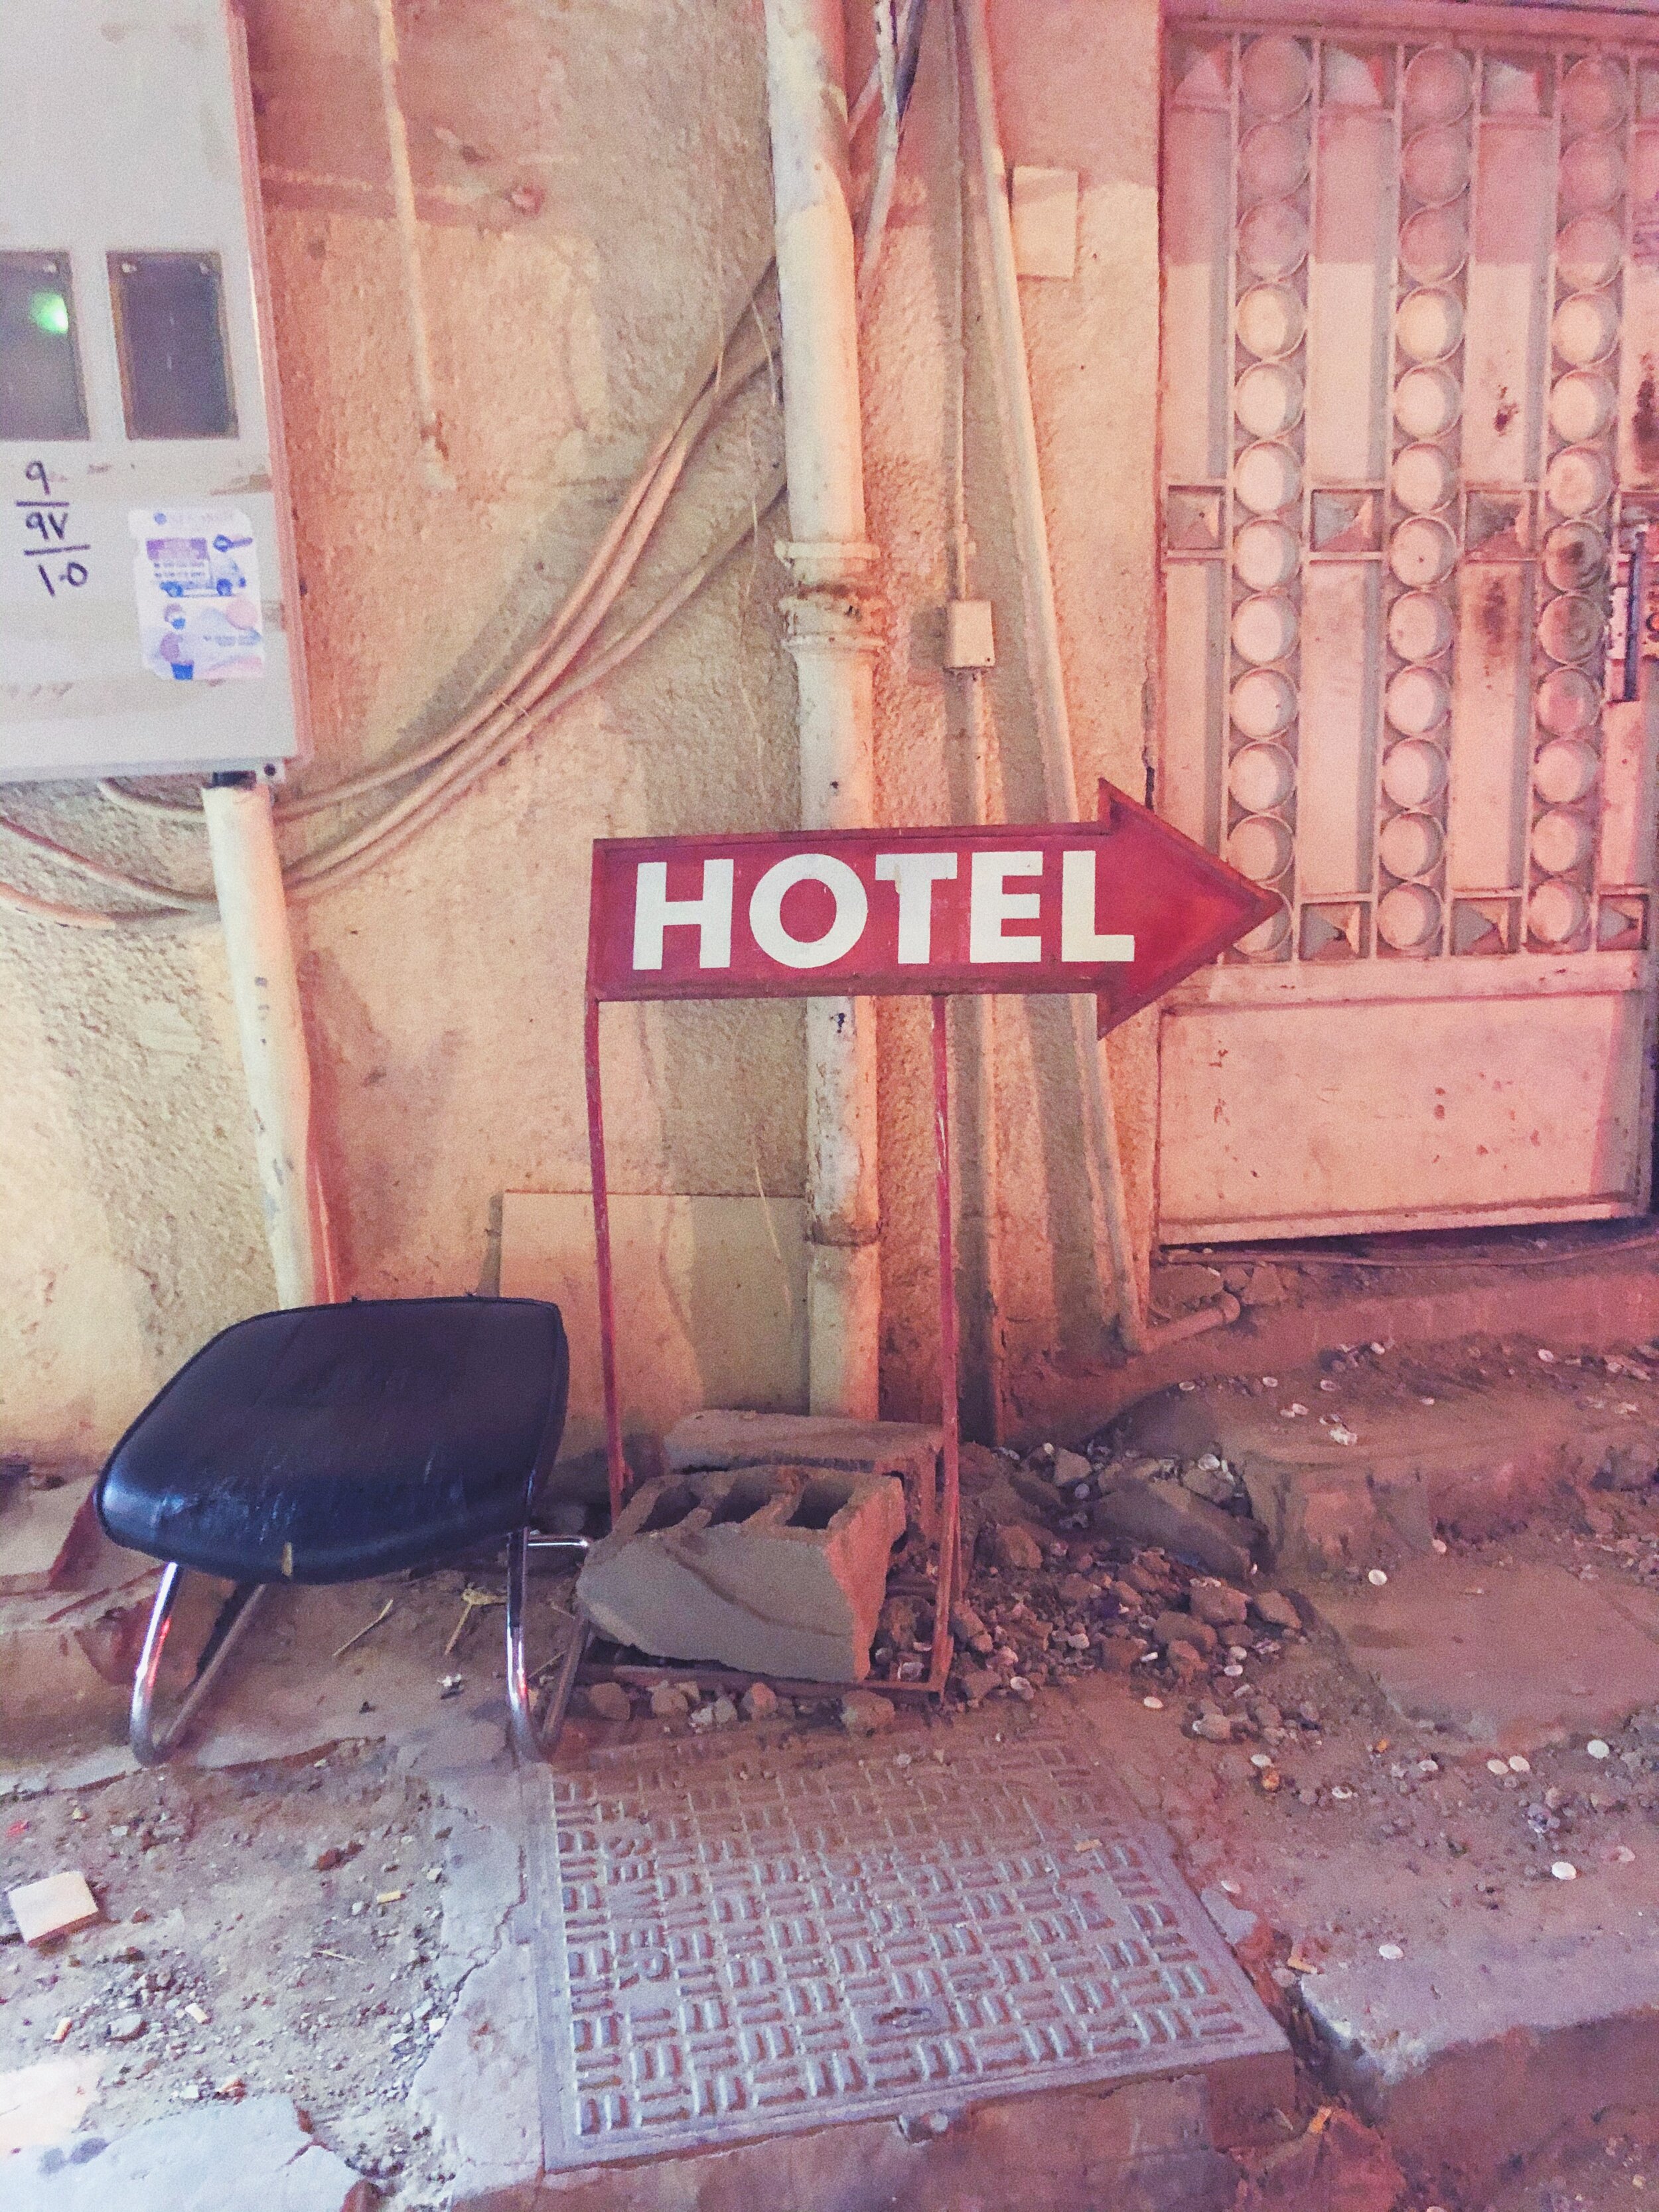 hotel sign in rubble.jpg